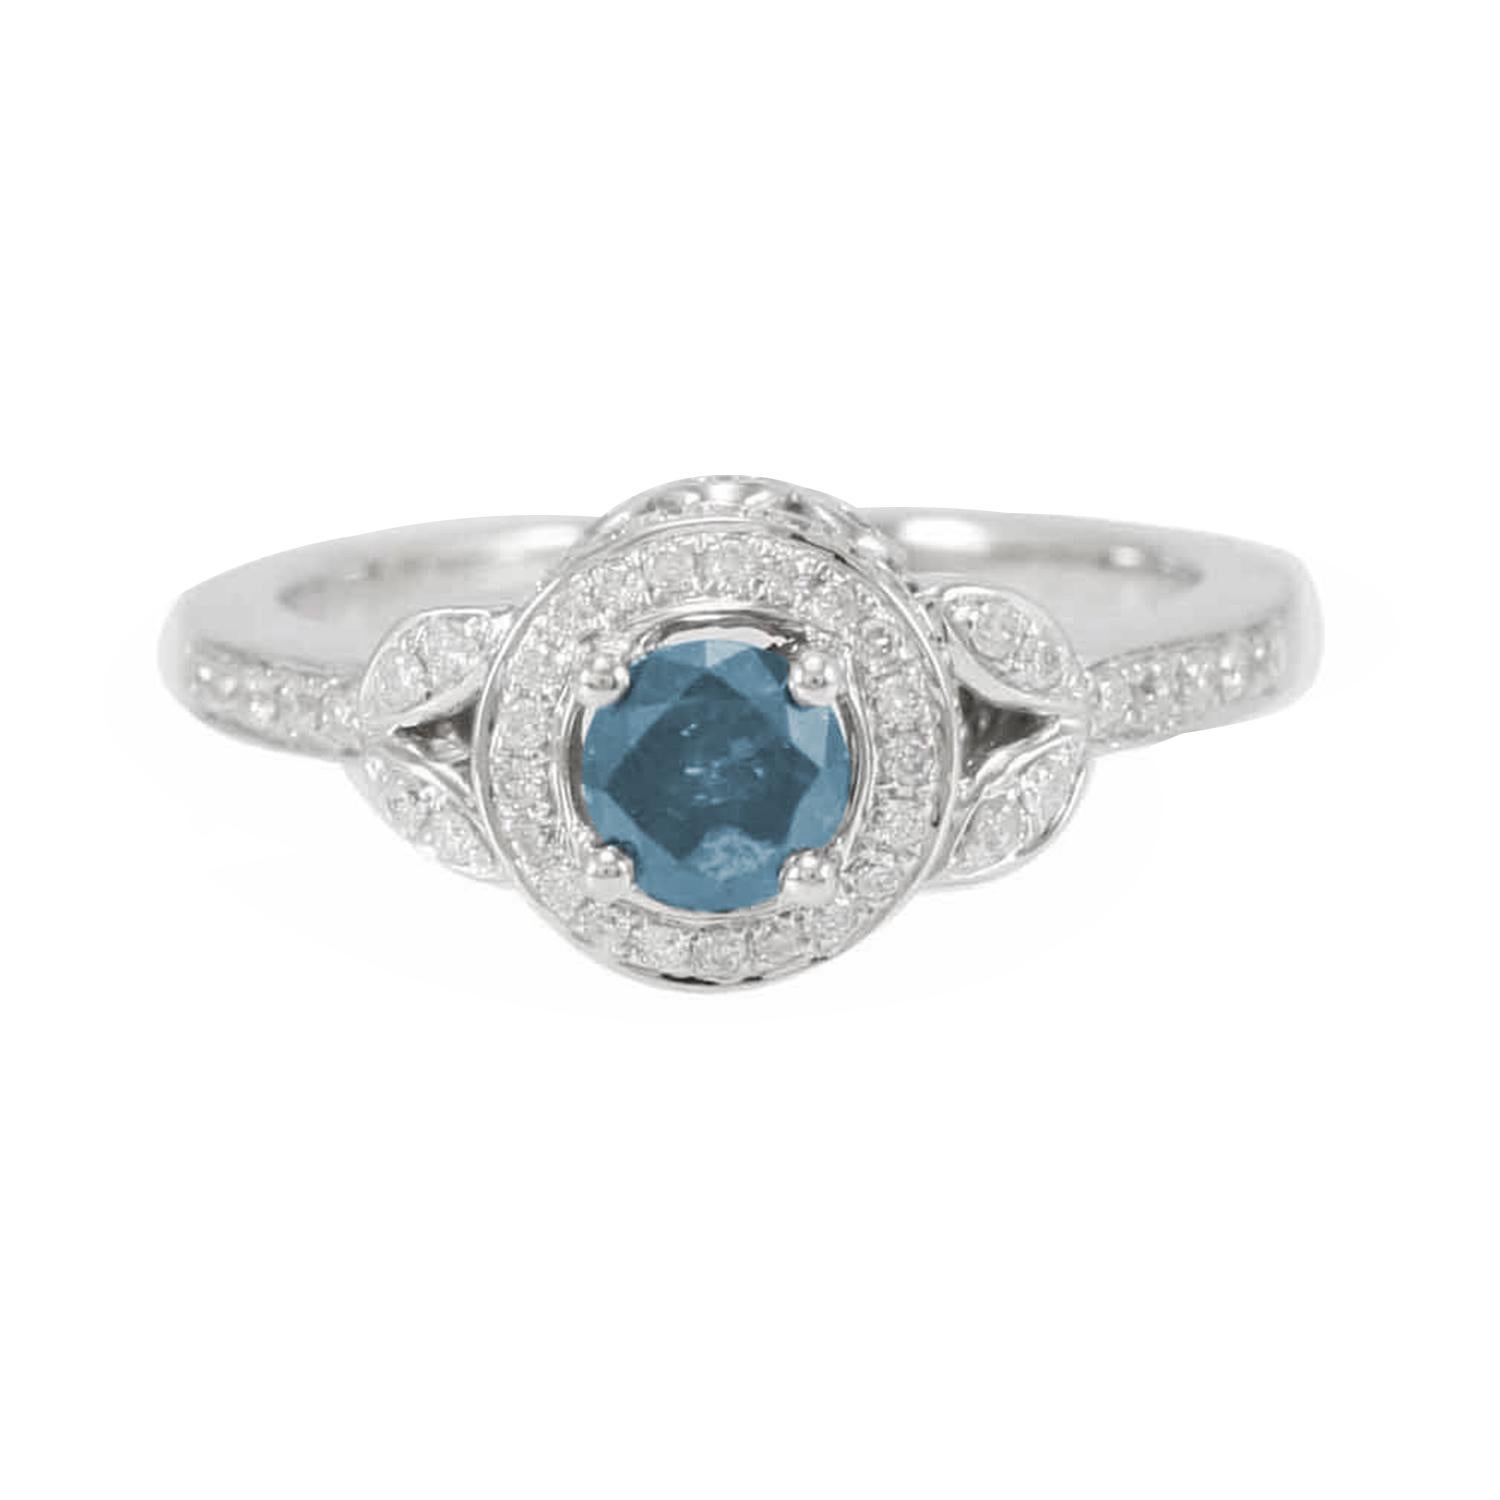 Dieser atemberaubende Ring aus der Suzy Levian Limited Edition Kollektion besteht aus einem wunderschönen blauen Diamanten (.36ct) im Rundschliff mit einer Reihe von weißen Diamanten (.41cttw) in einer Fassung aus 14k Weißgold. Französische